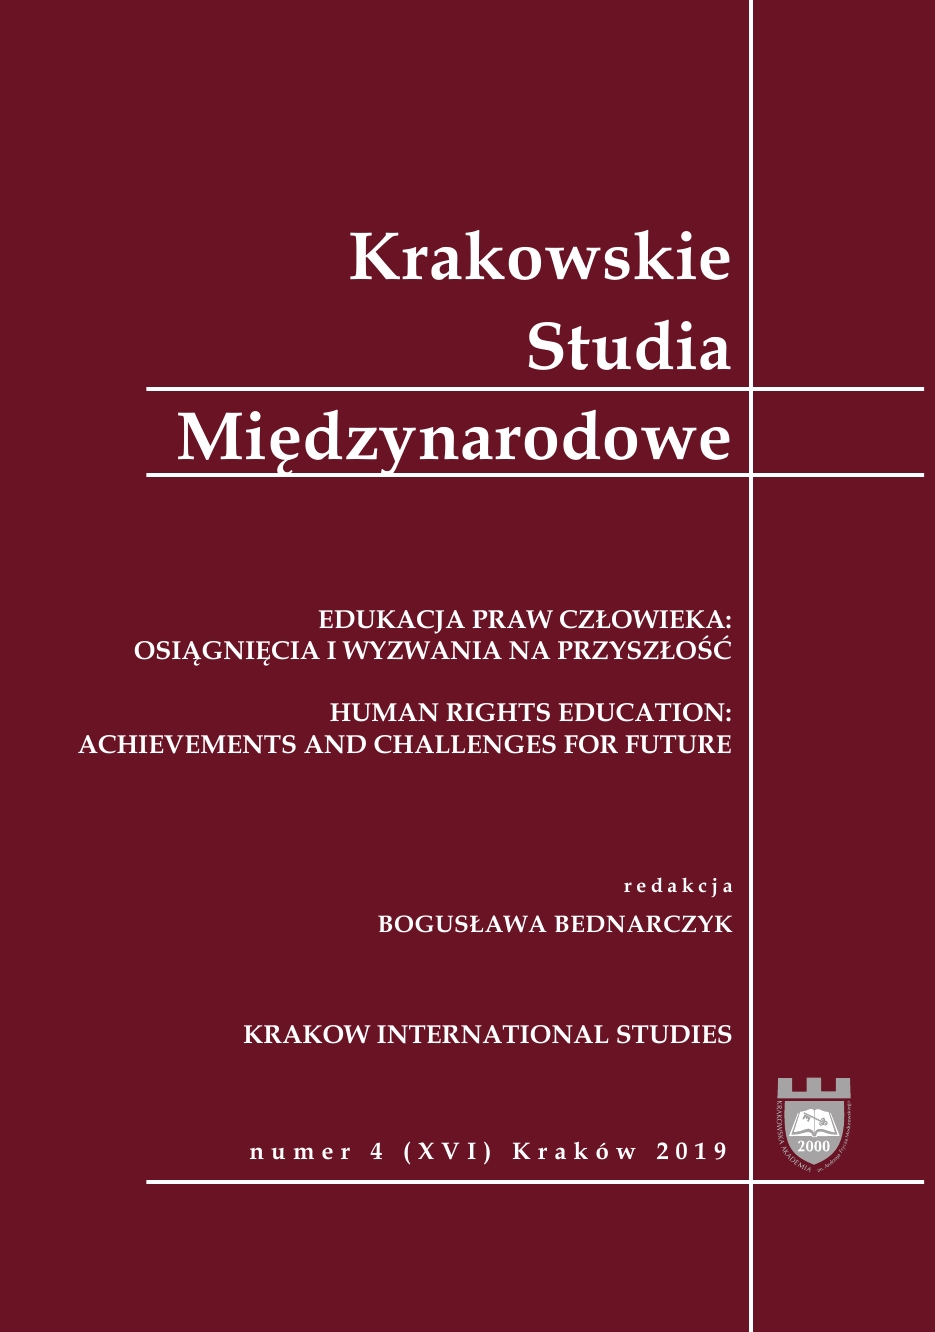 Memoir of Professor Michał Chorośnicki Cover Image